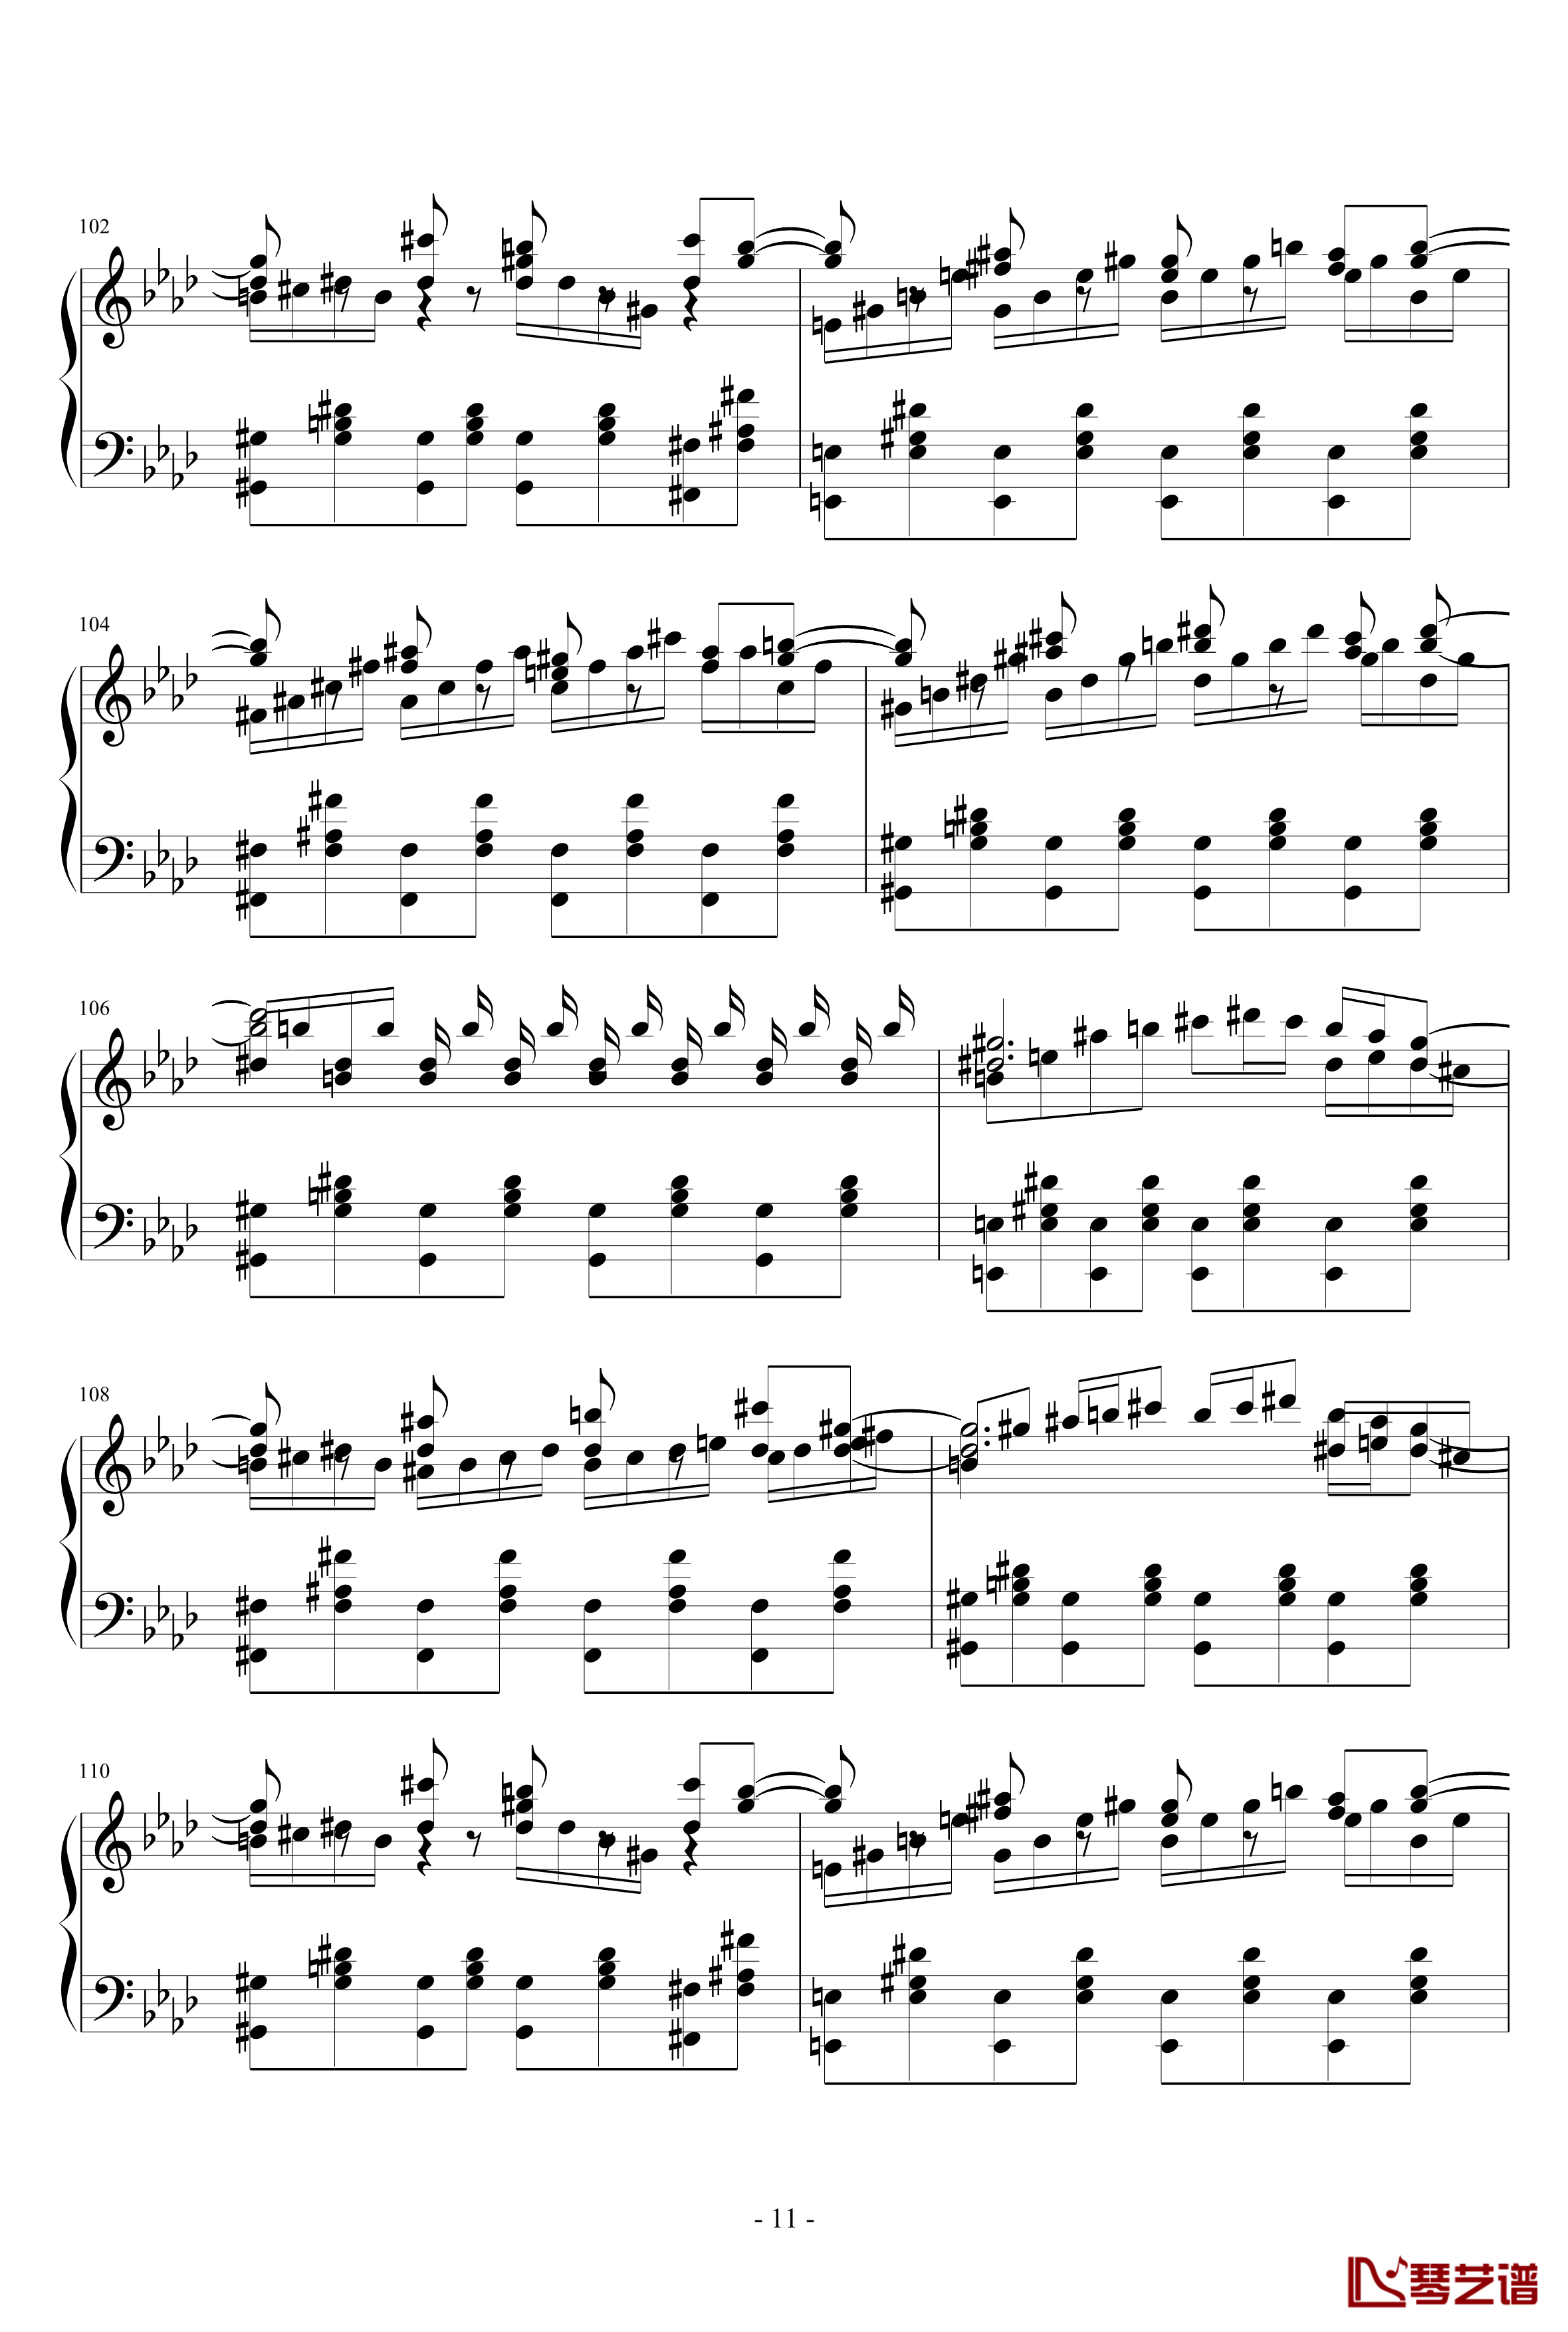 ネクロファンタジア钢琴谱-HARD-八云紫-东方project11